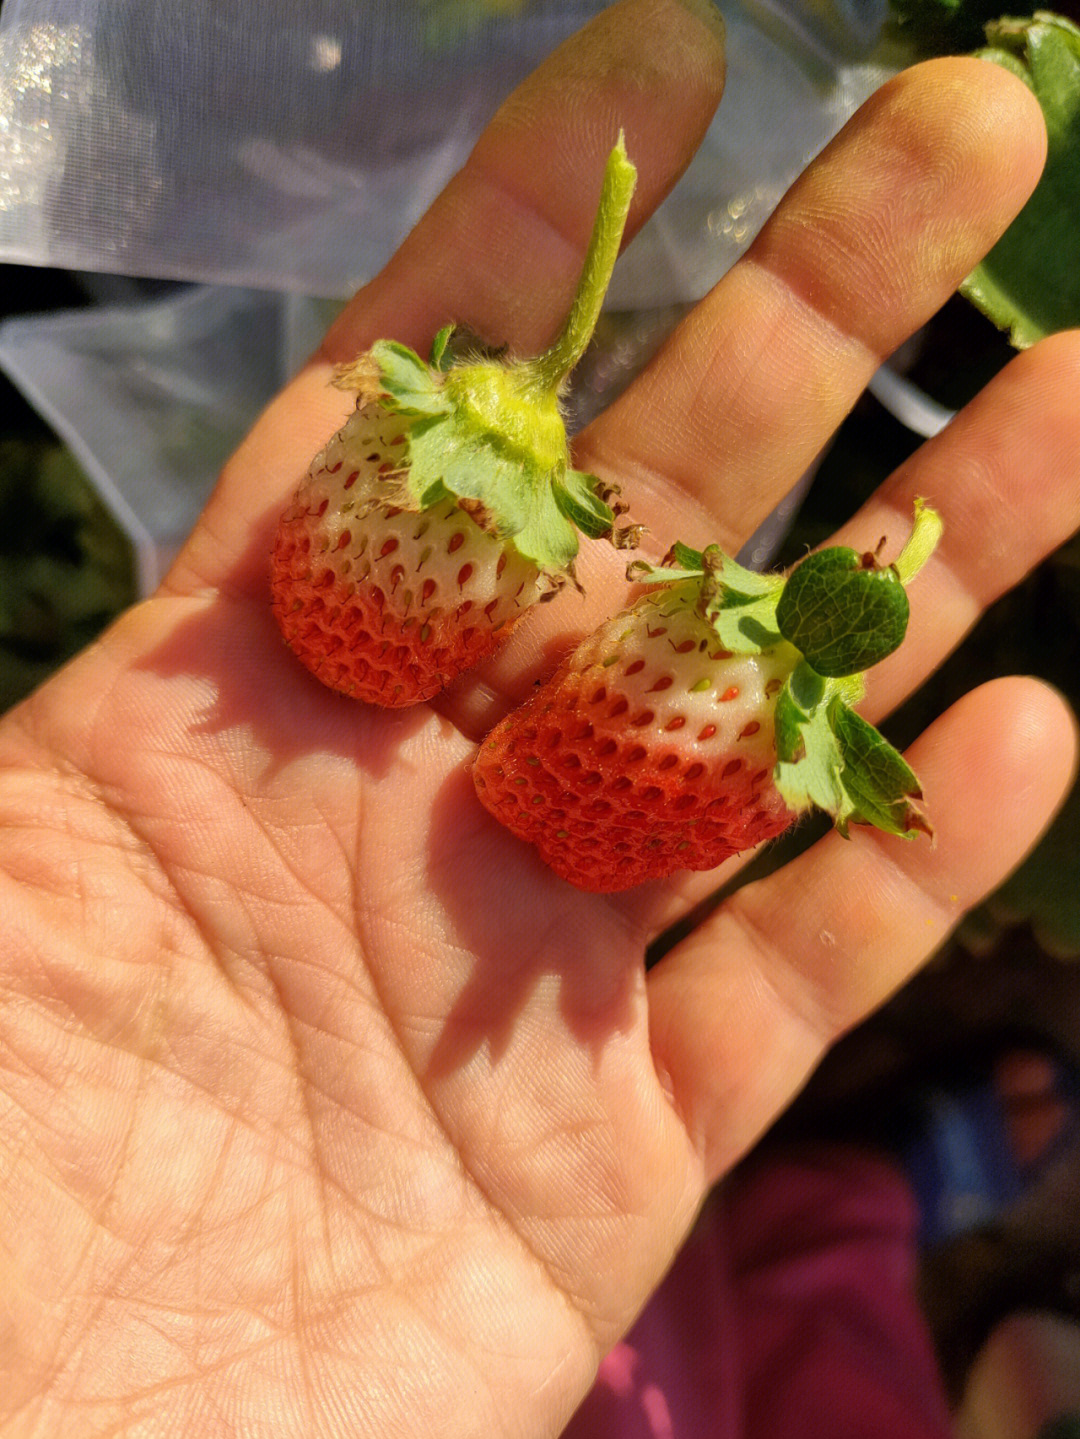 没熟的草莓图片